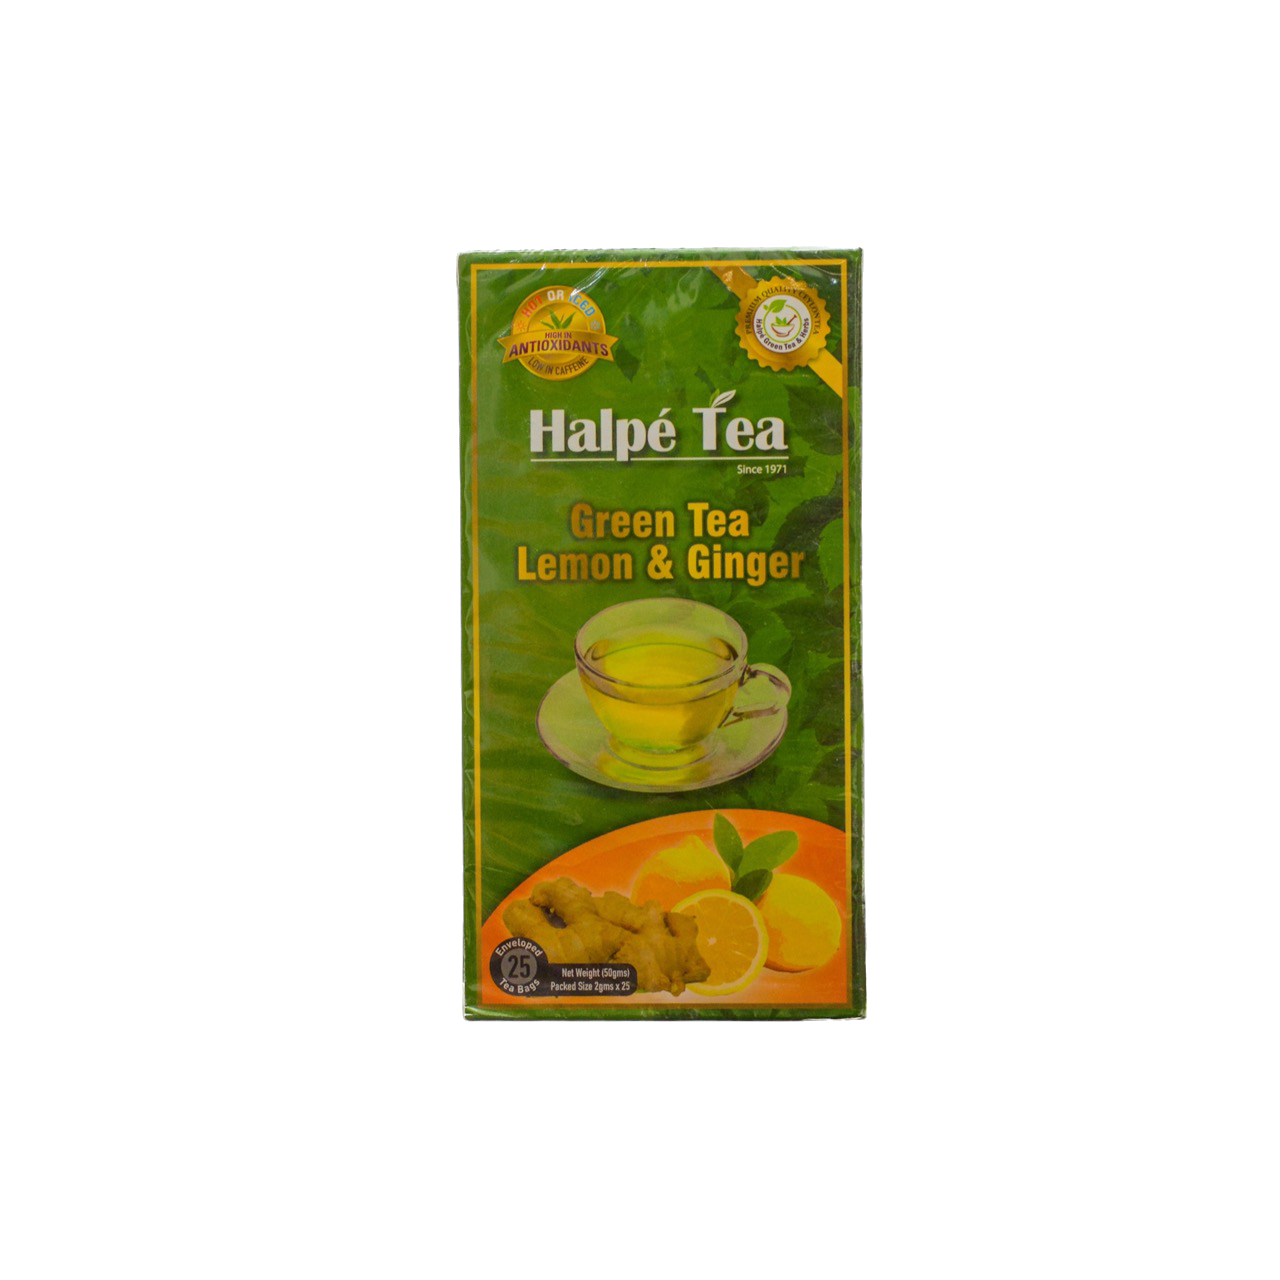 Halpe Tea